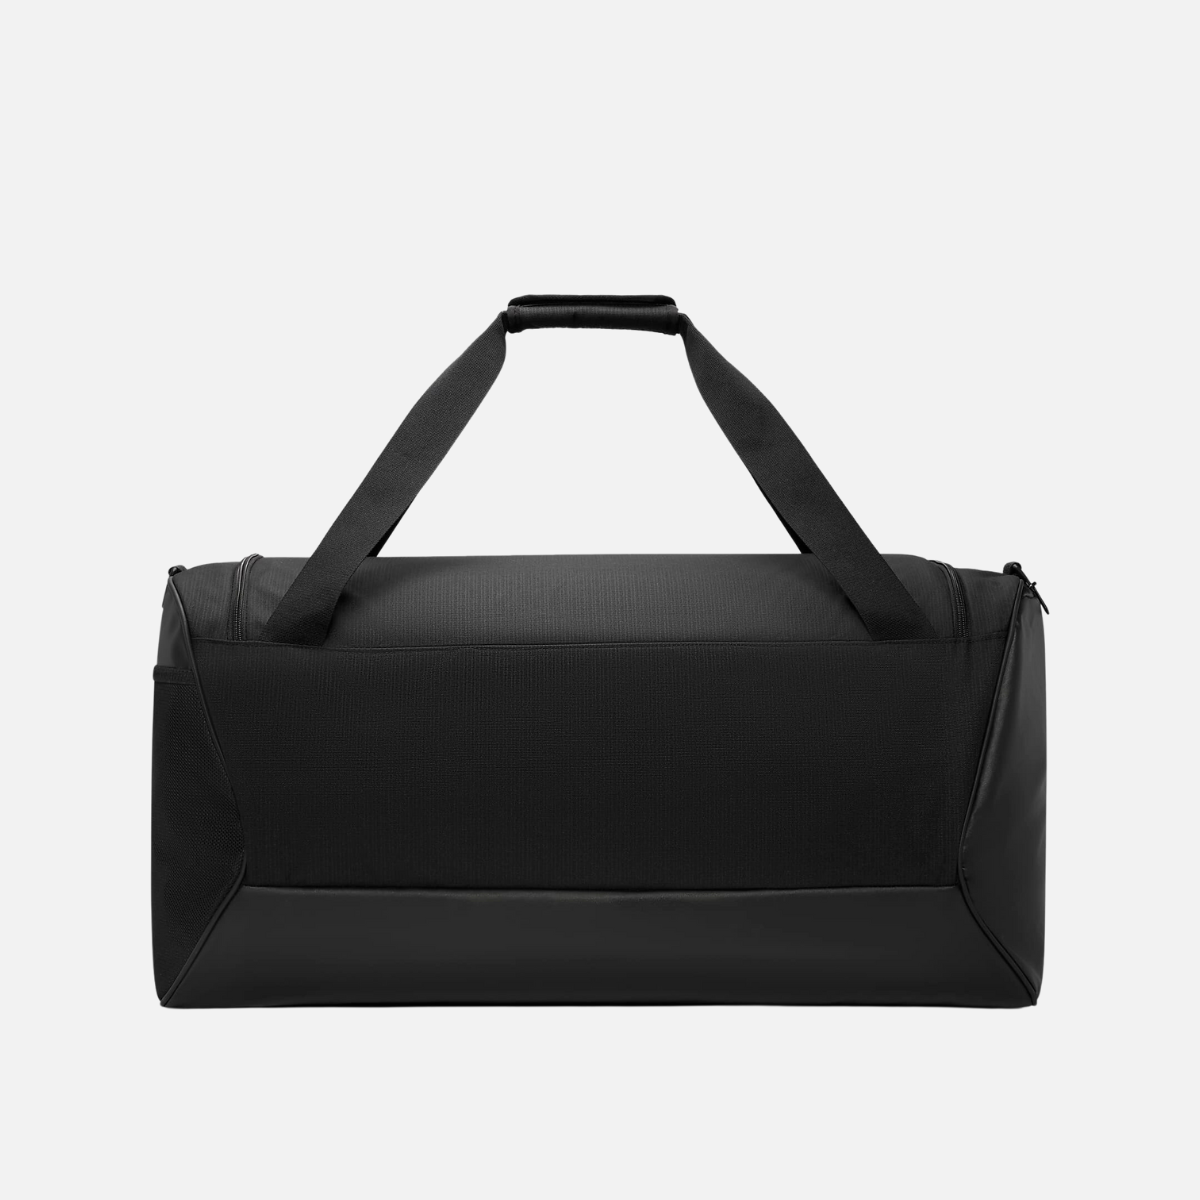 Nike Brasilia 9.5 Training Duffel Bag (Large, 95L) -Black/Black/White